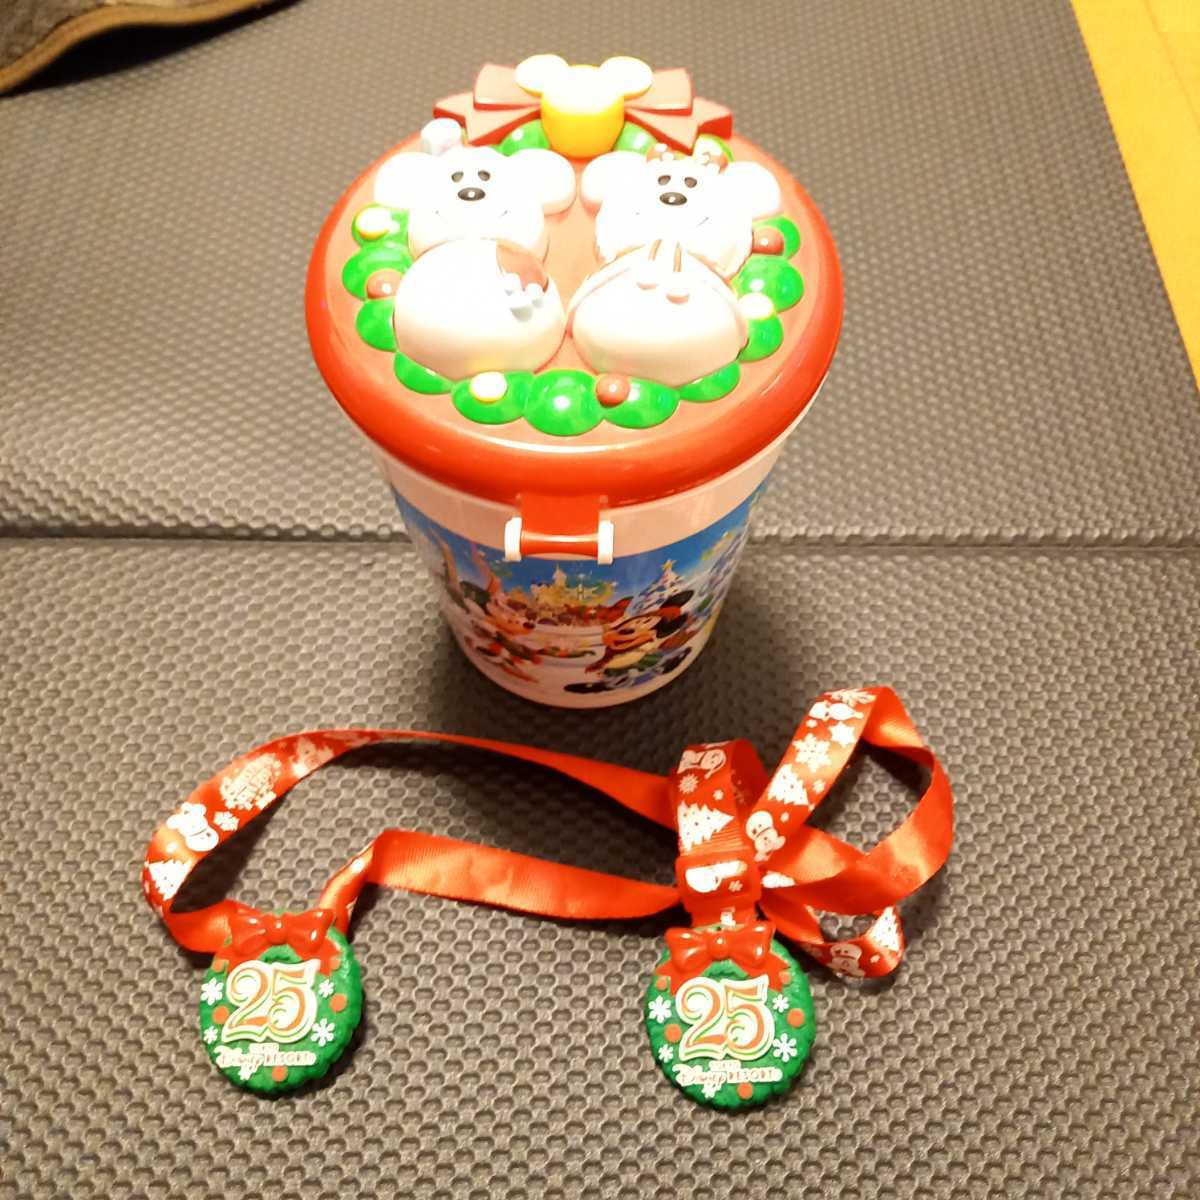 東京ディズニーランドポップコーンバケット25周年クリスマスバージョン 日本代購代bid第一推介 Funbid